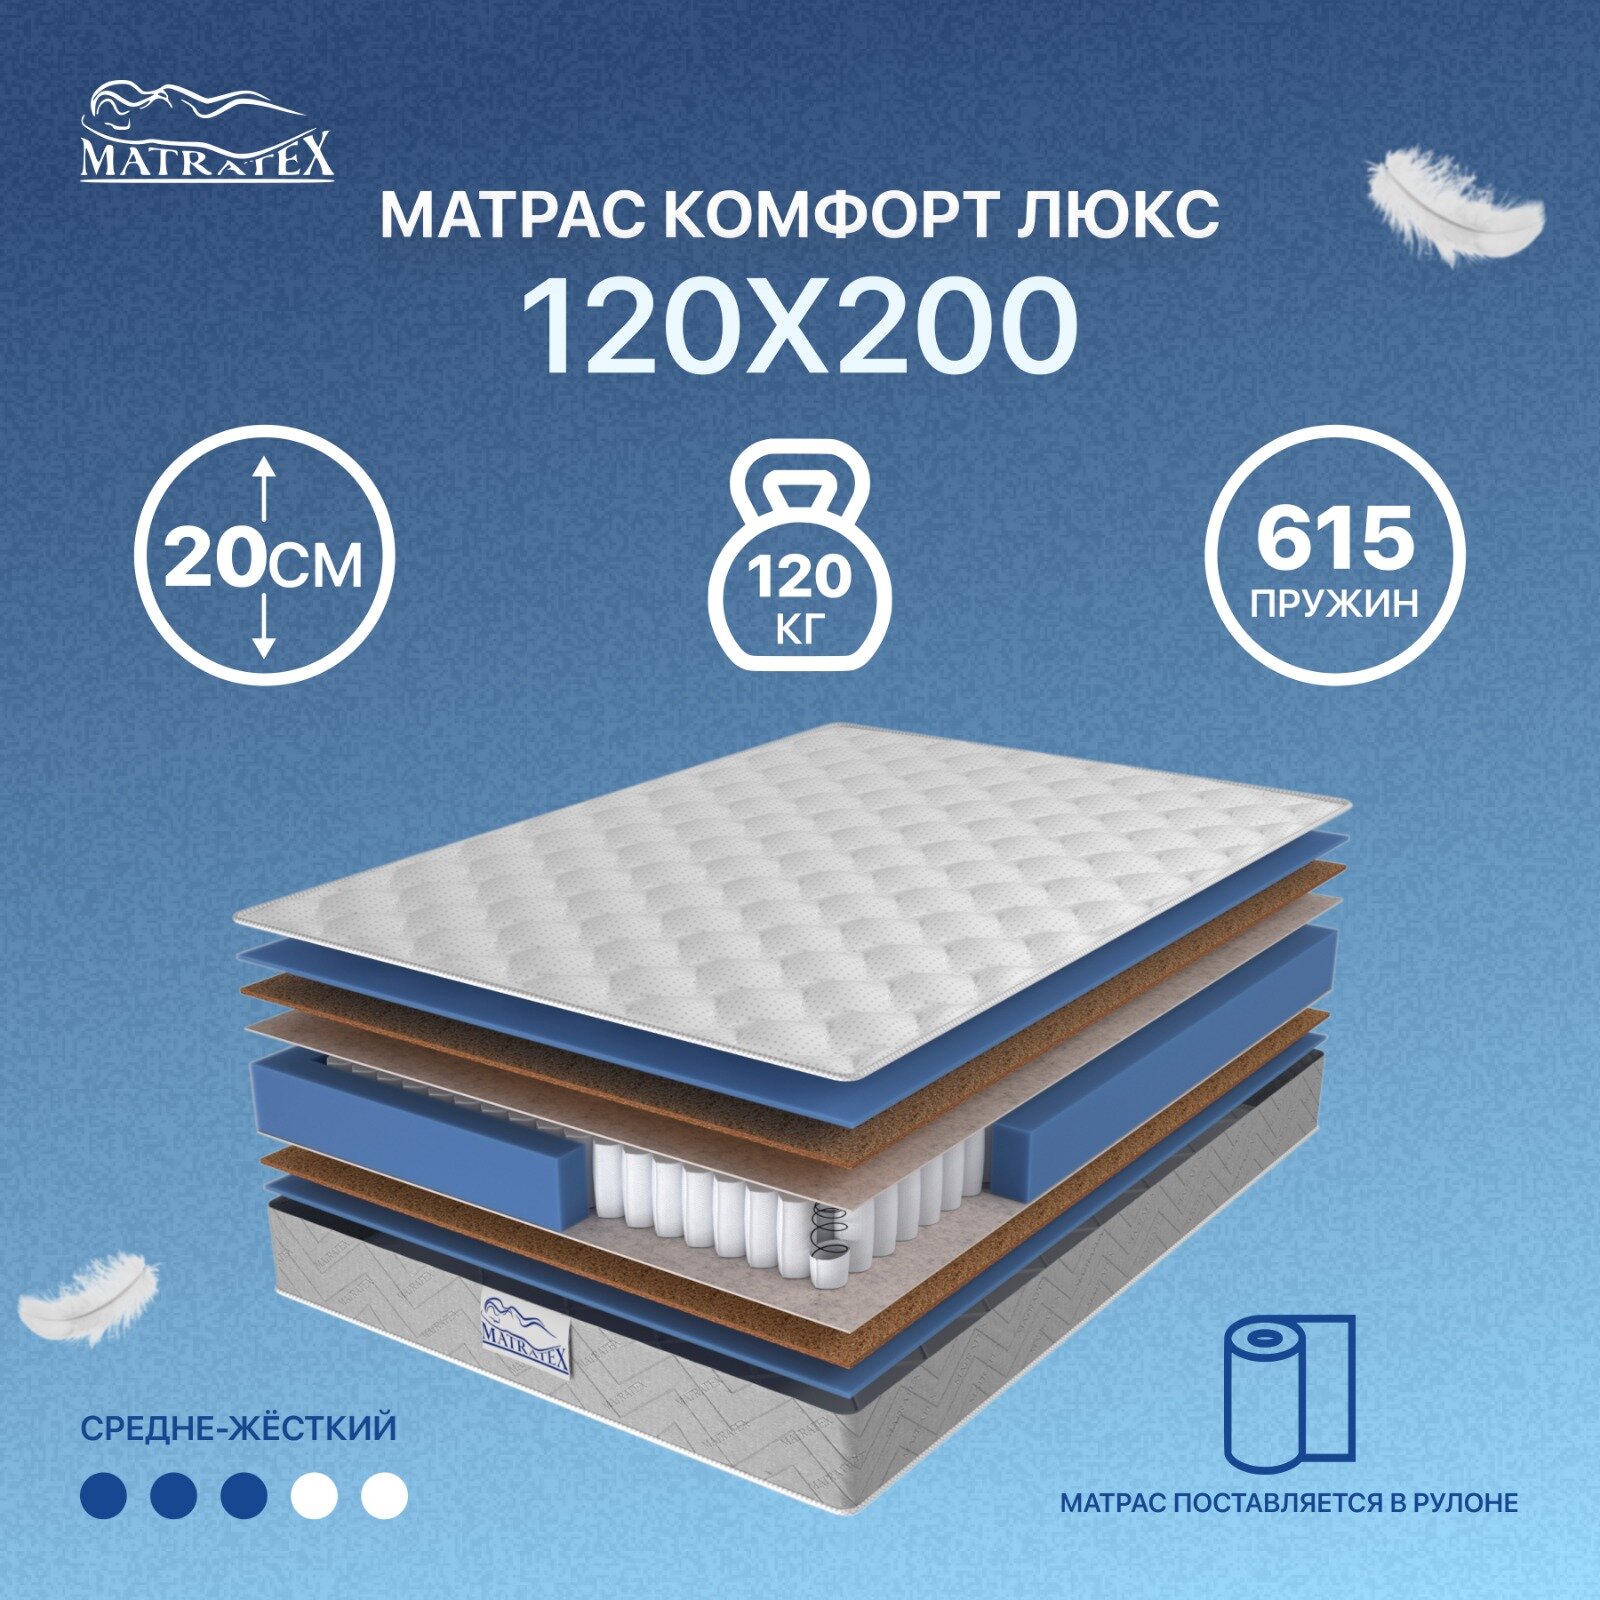 Матрас MATRATEX комфорт люкс 120х200